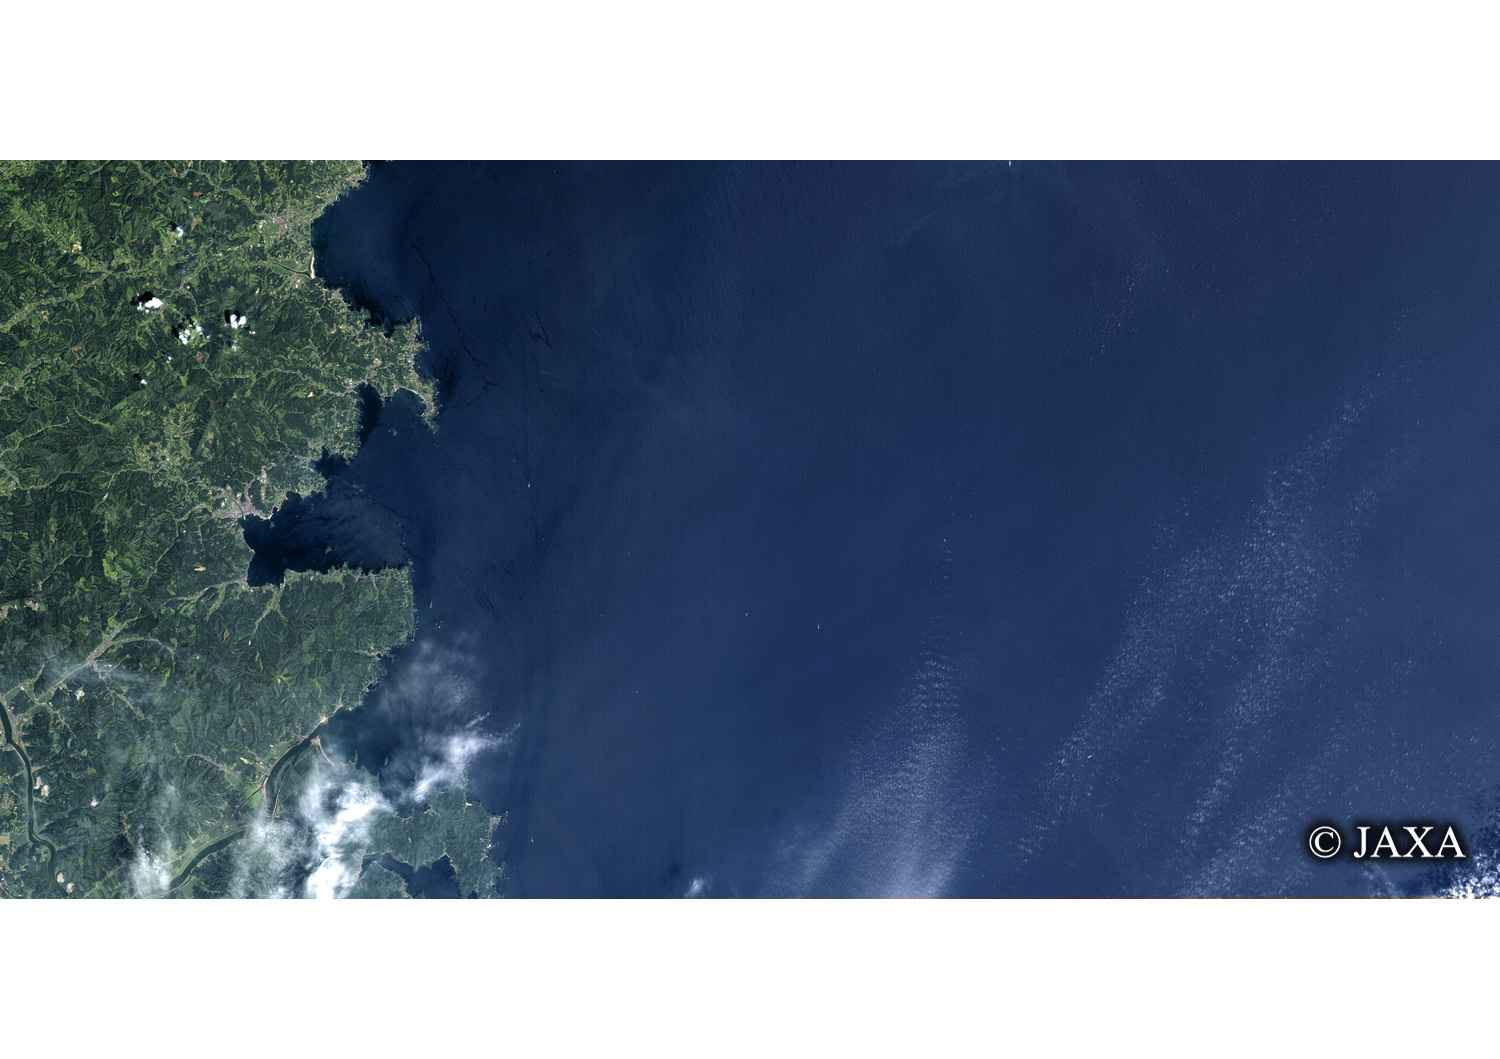 だいちから見た日本の都市 震災前の南三陸町:衛星画像